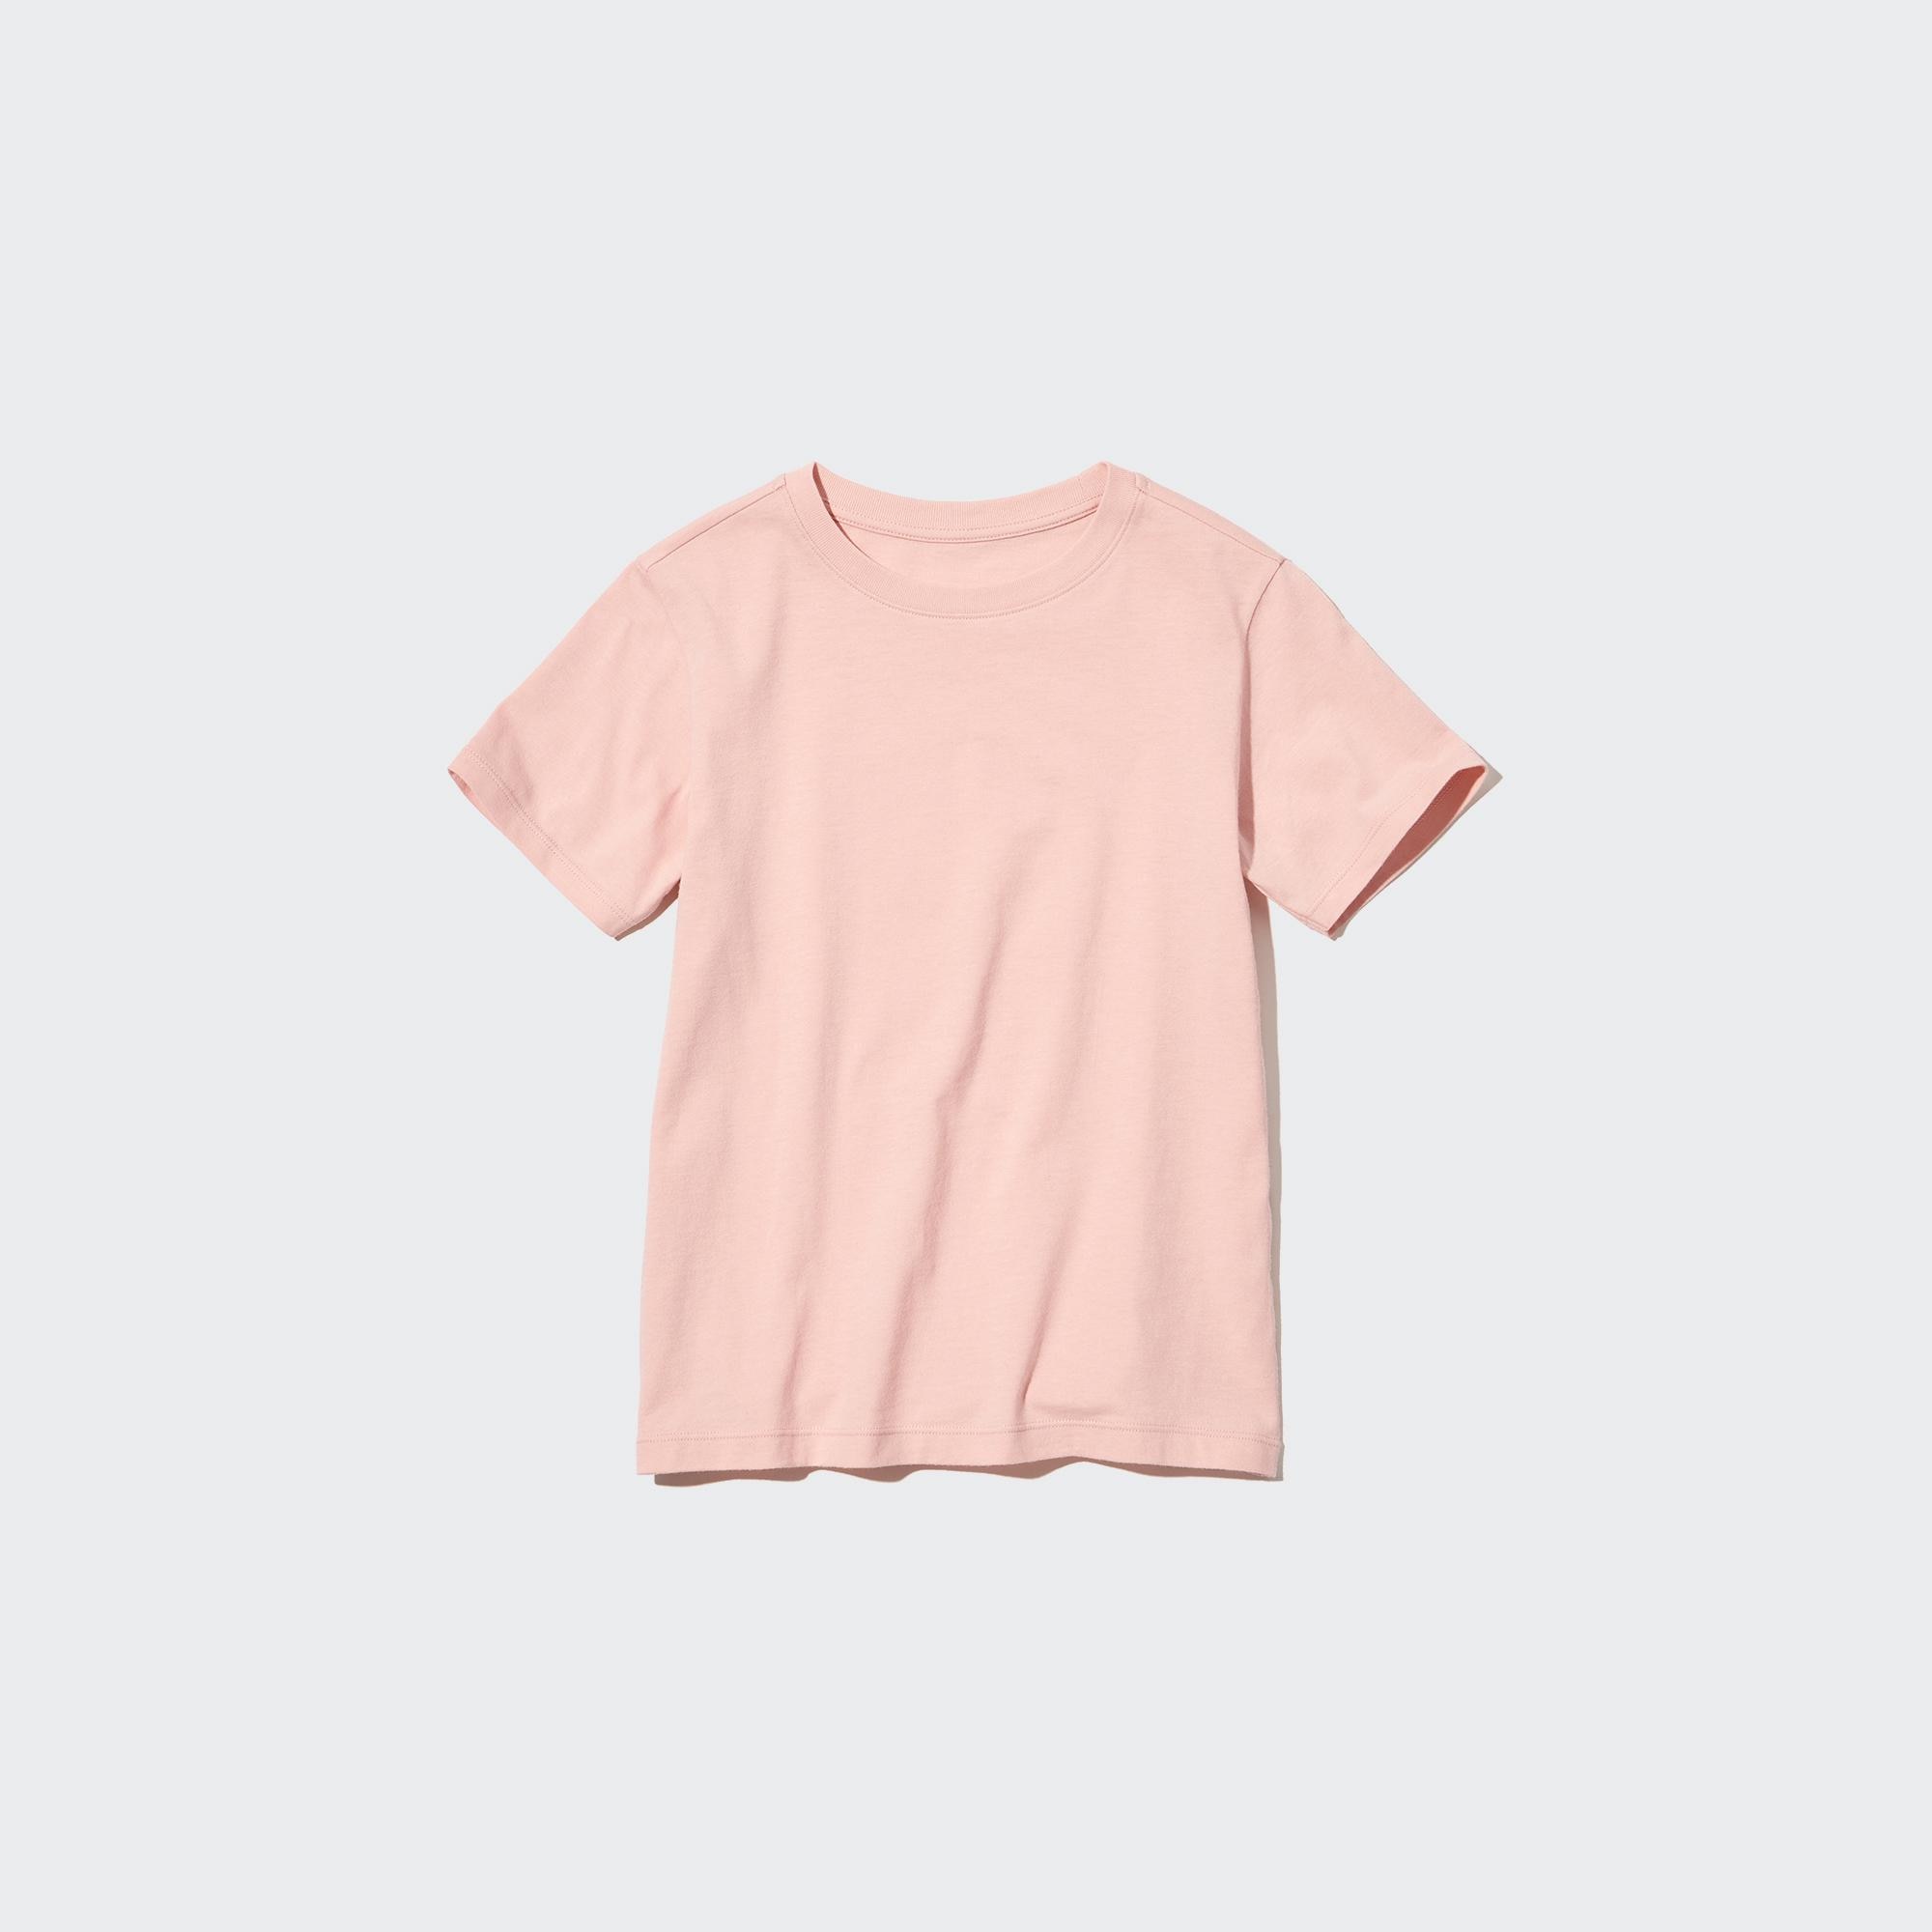 Cotton Color Crew Neck Short-Sleeve T-Shirt